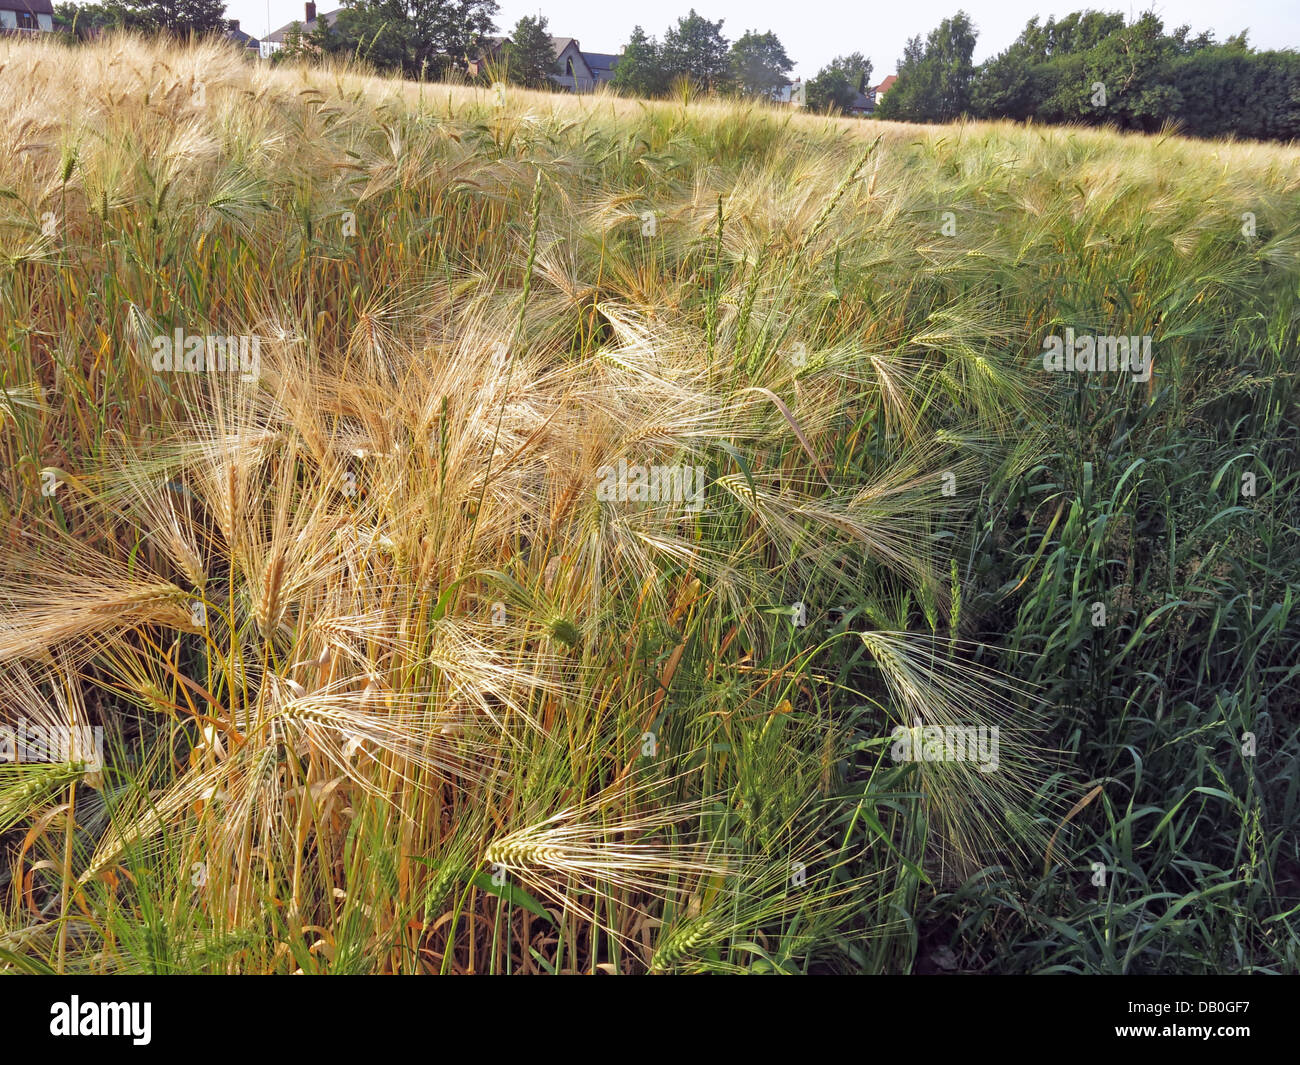 Champ de blé prêt à récolter en Grappenhall, Cheshire, nord-ouest de l'Angleterre, Royaume-Uni Banque D'Images